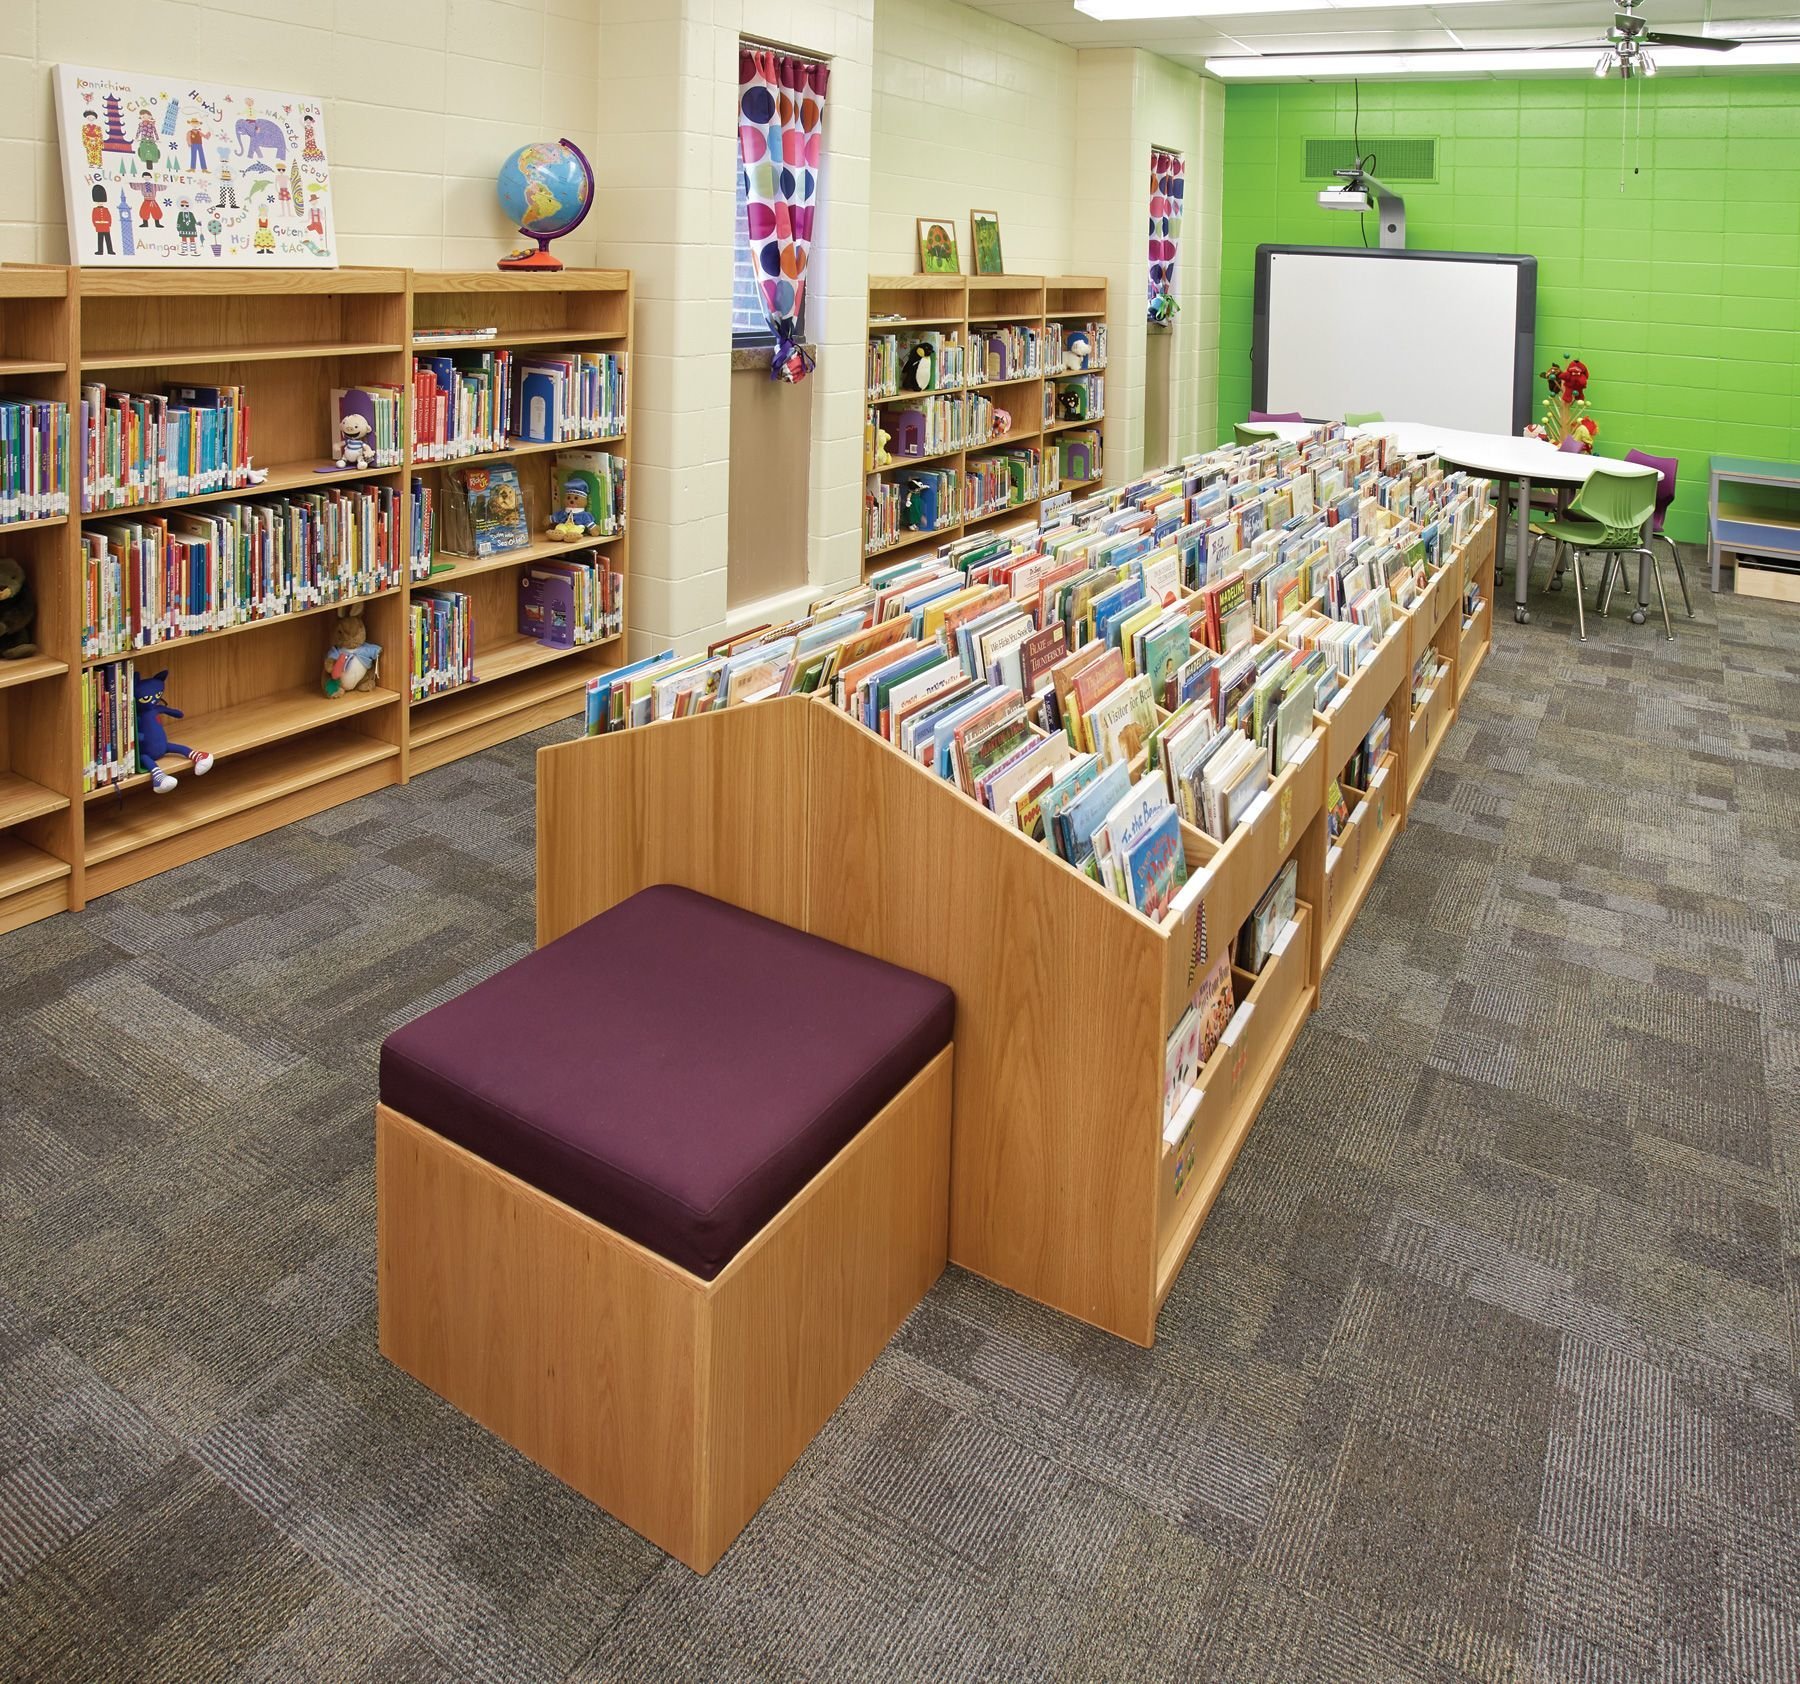 Библиотека классов c. Библиотека в школе. Интерьер библиотеки в школе. Мебель для школьной библиотеки. Мебель для читального зала школьной библиотеки.